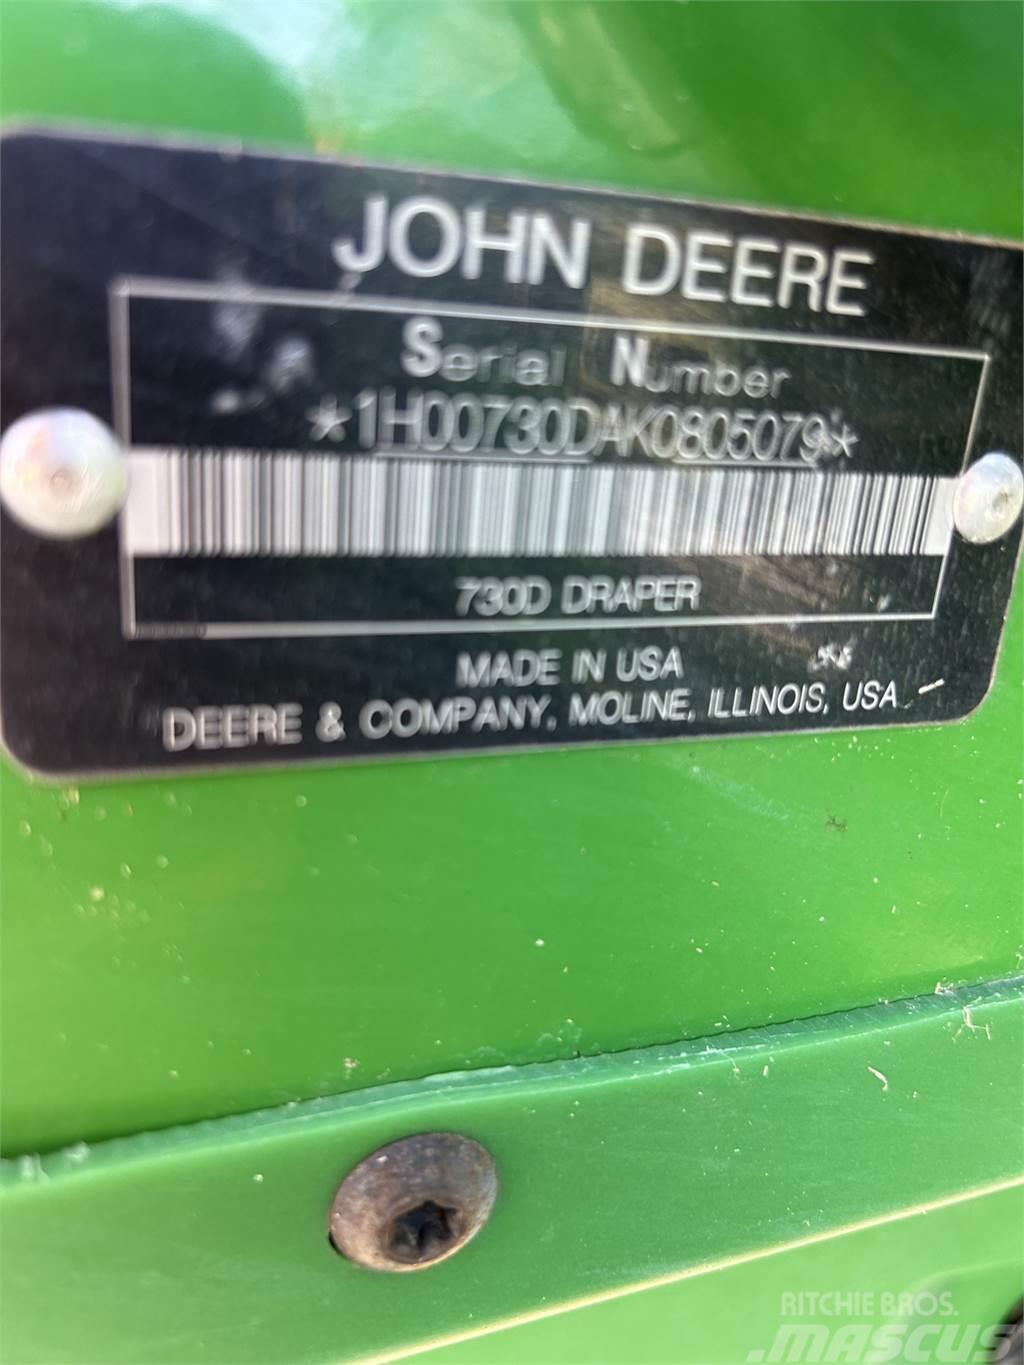 John Deere 730D Příslušenství a náhradní díly ke kombajnům